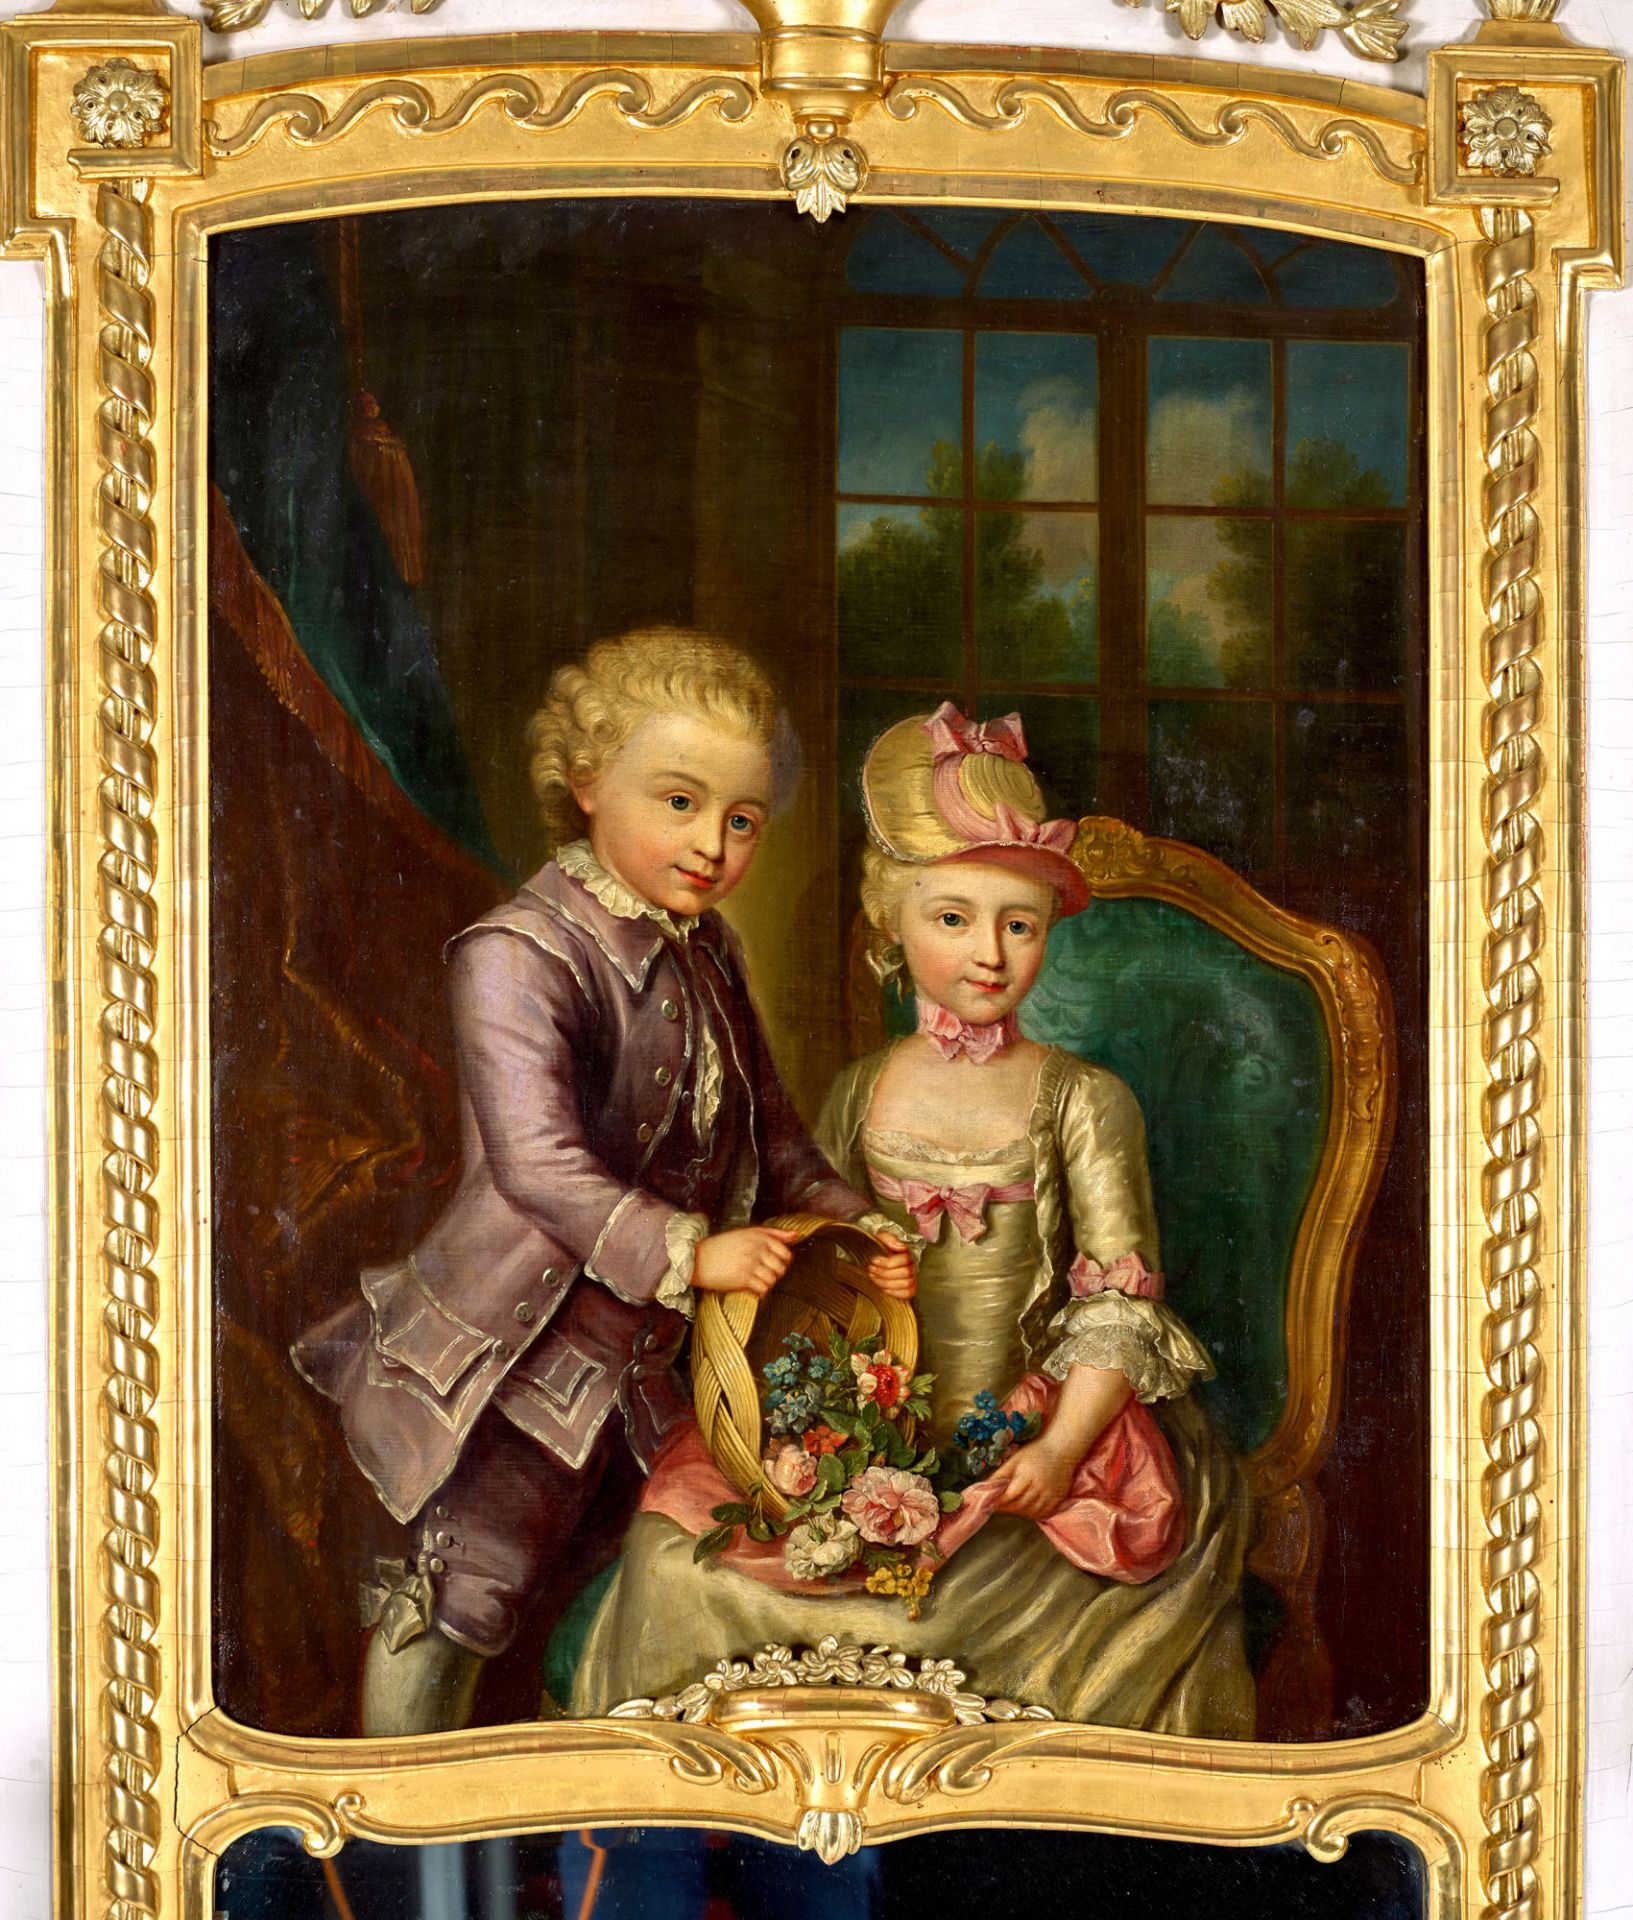 ABERLI, JOHANN LUDWIG: Trumeauspiegel mit Bildnis eines vornehmen Kinderpaares. - Bild 2 aus 2